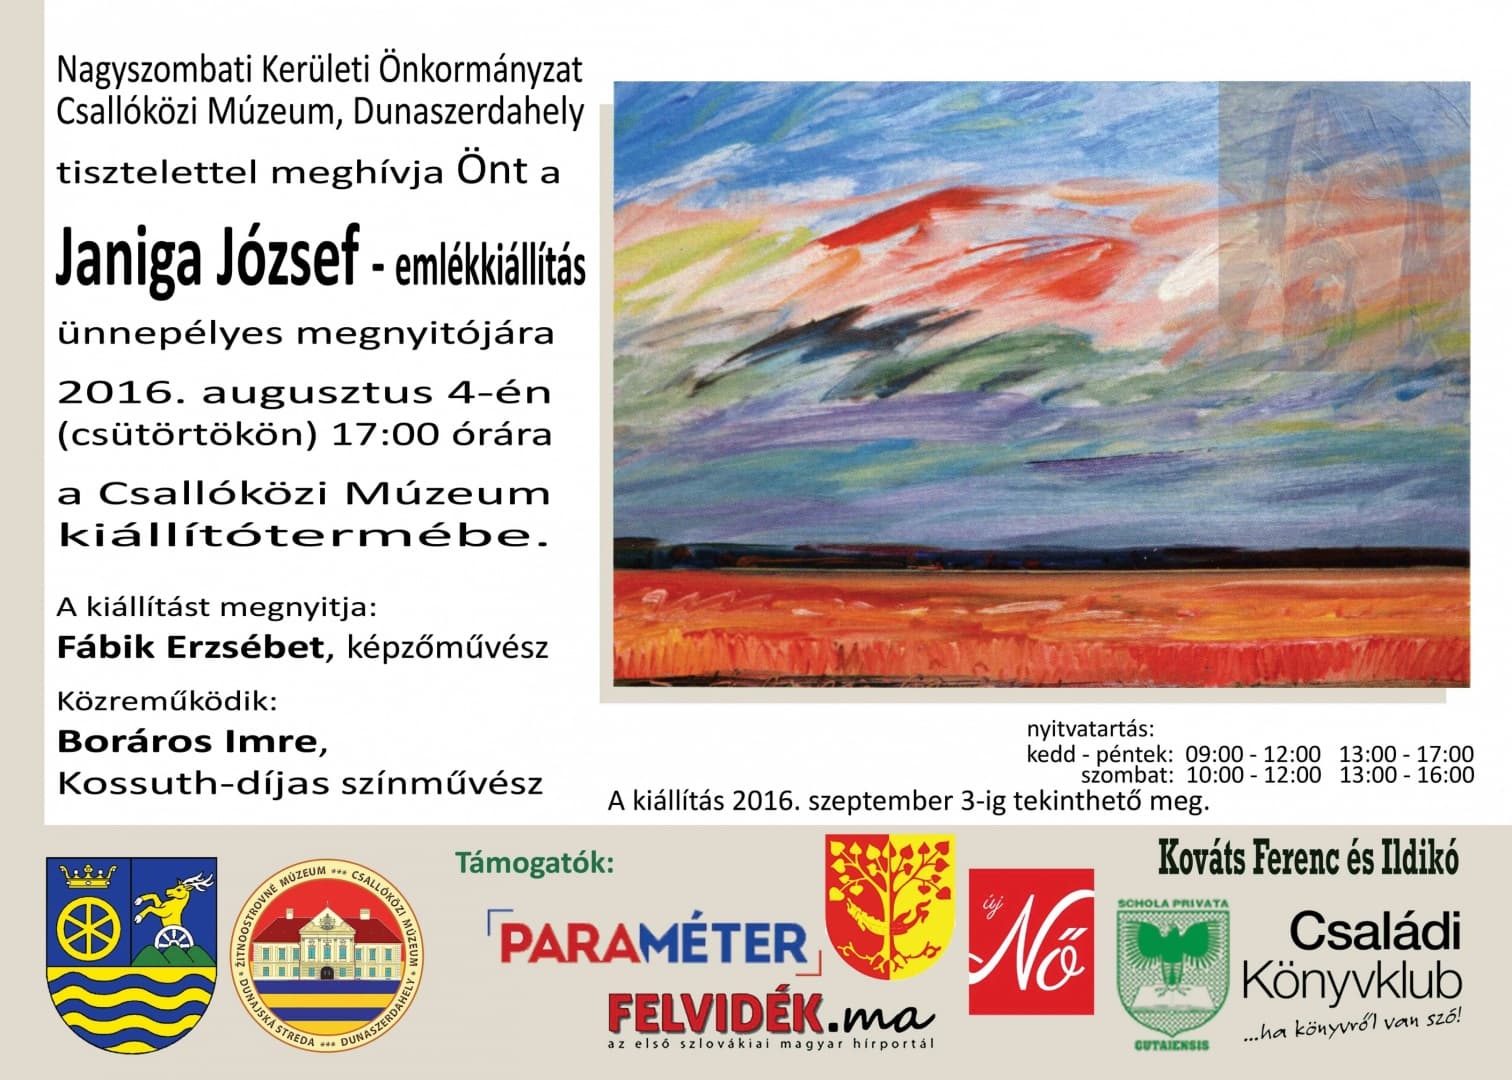 Janiga József-emlékkiállítás a dunaszerdahelyi Csallóközi Múzeumban